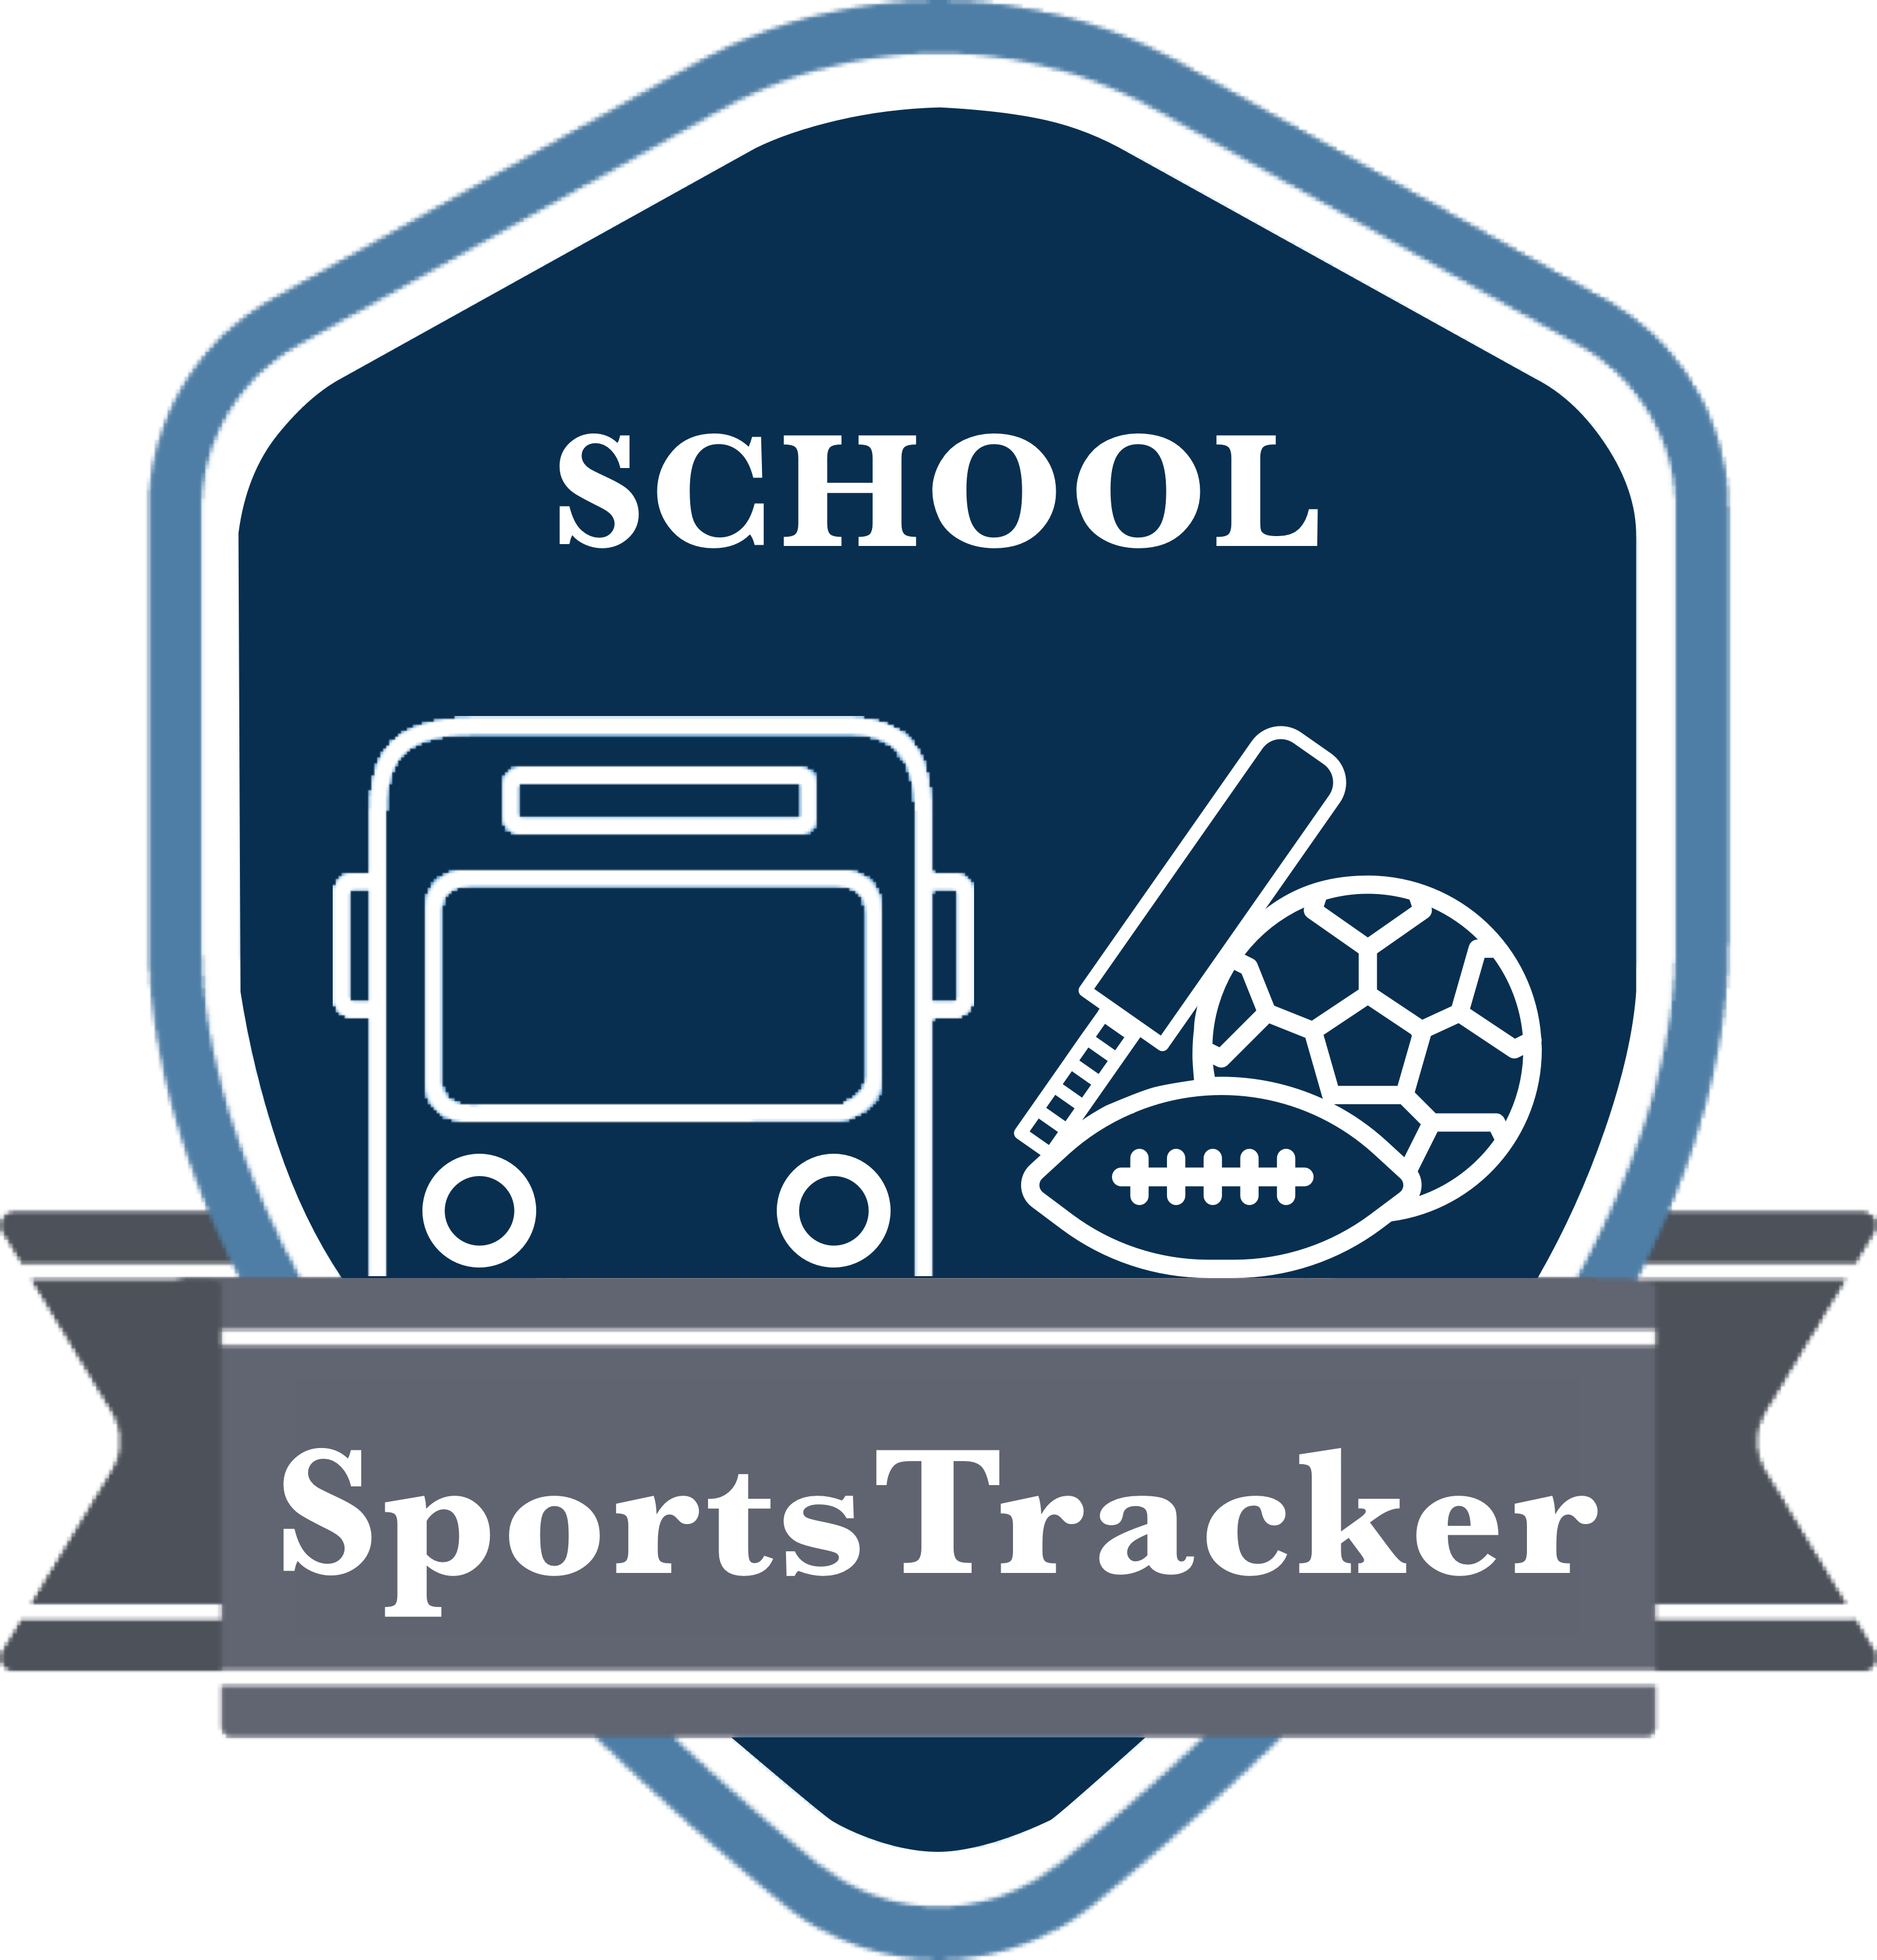 schoolsportstrakcer-logo